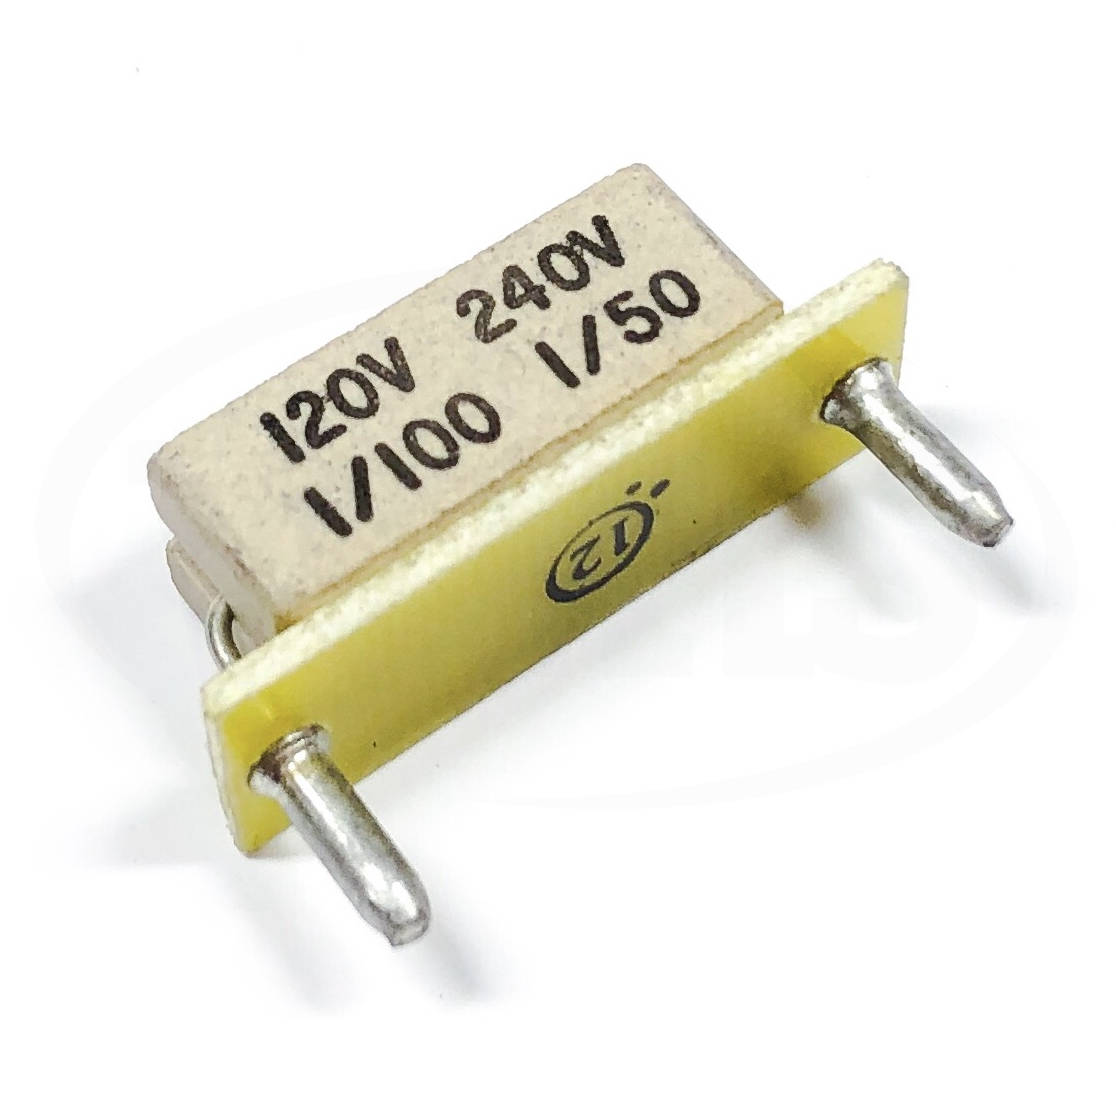 KB Electronics KB-9841 horsepower resistor 1/2hp @ 90-130vdc 1hp @ 180vdc 